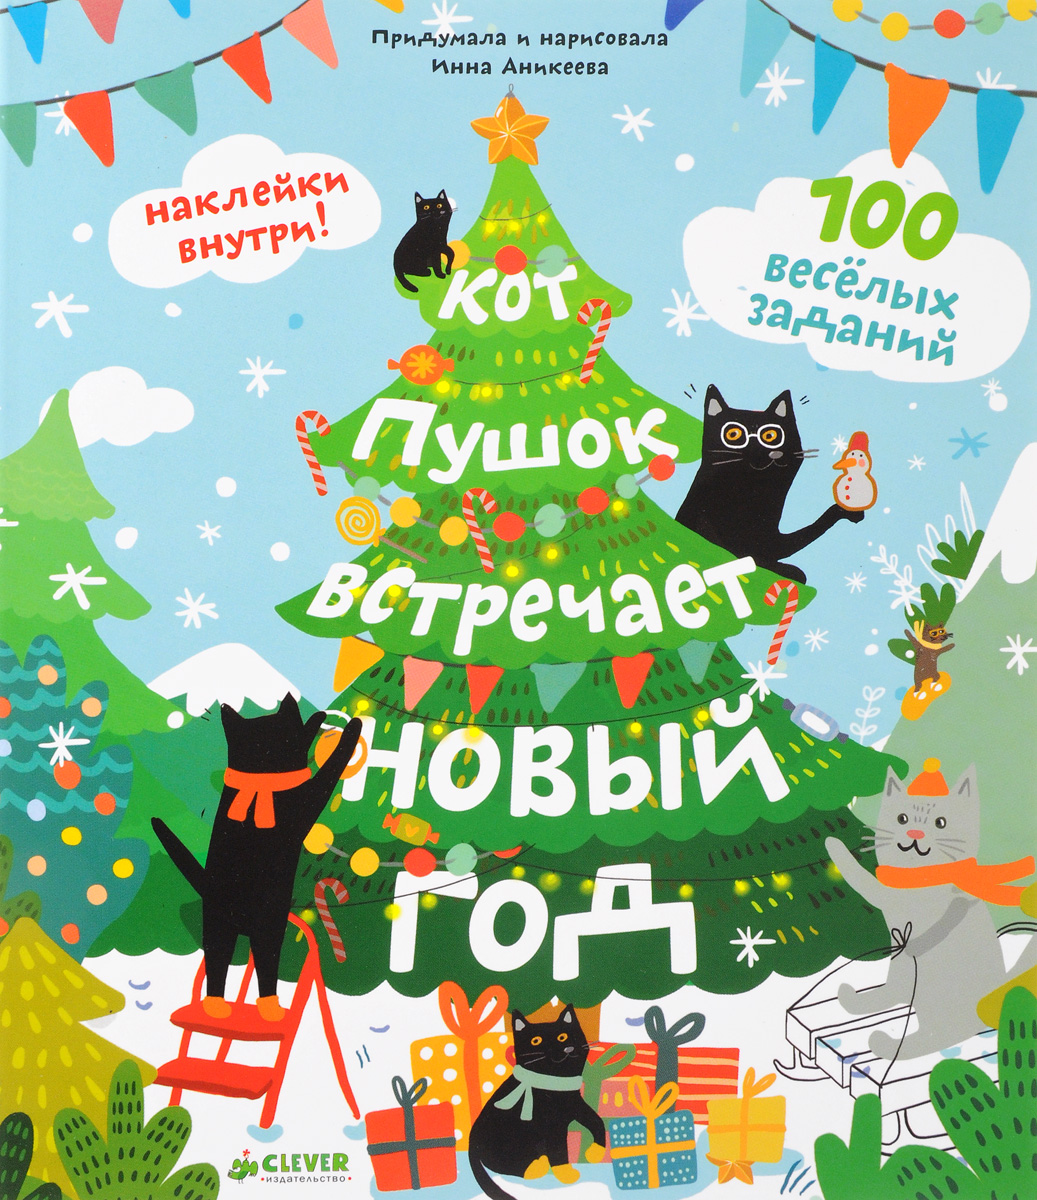 Кот Пушок встречает Новый год. 100 веселых заданий (+ наклейки). Инна Аникеева